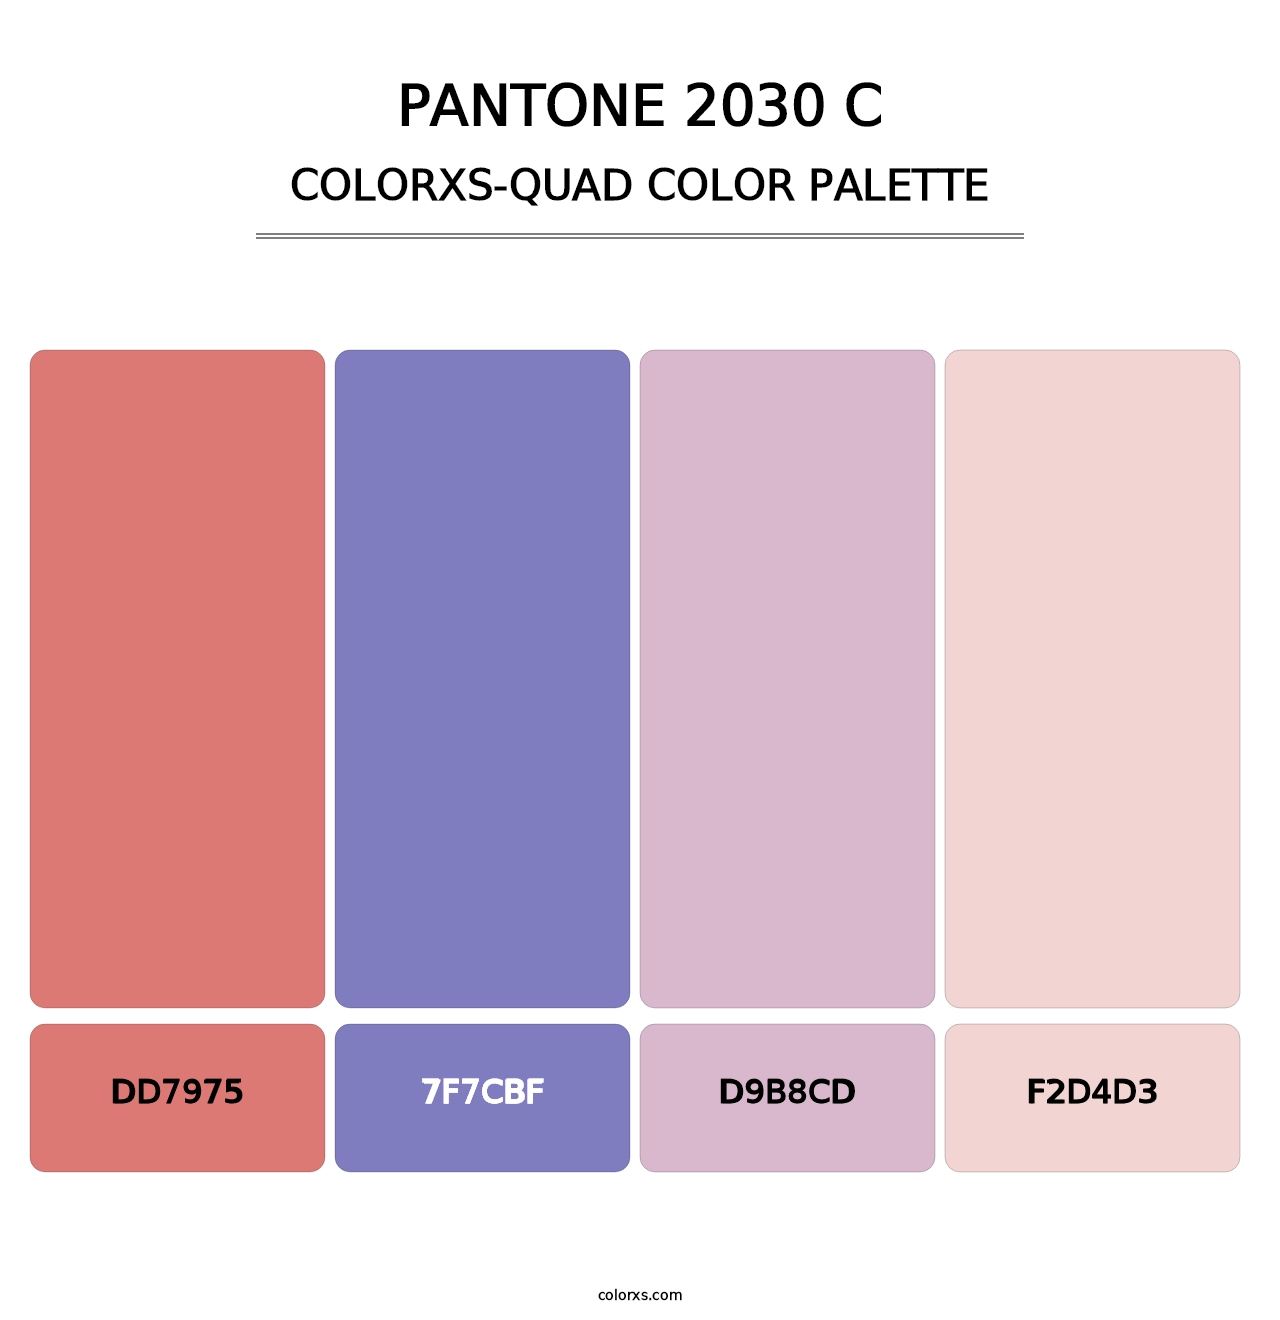 PANTONE 2030 C - Colorxs Quad Palette